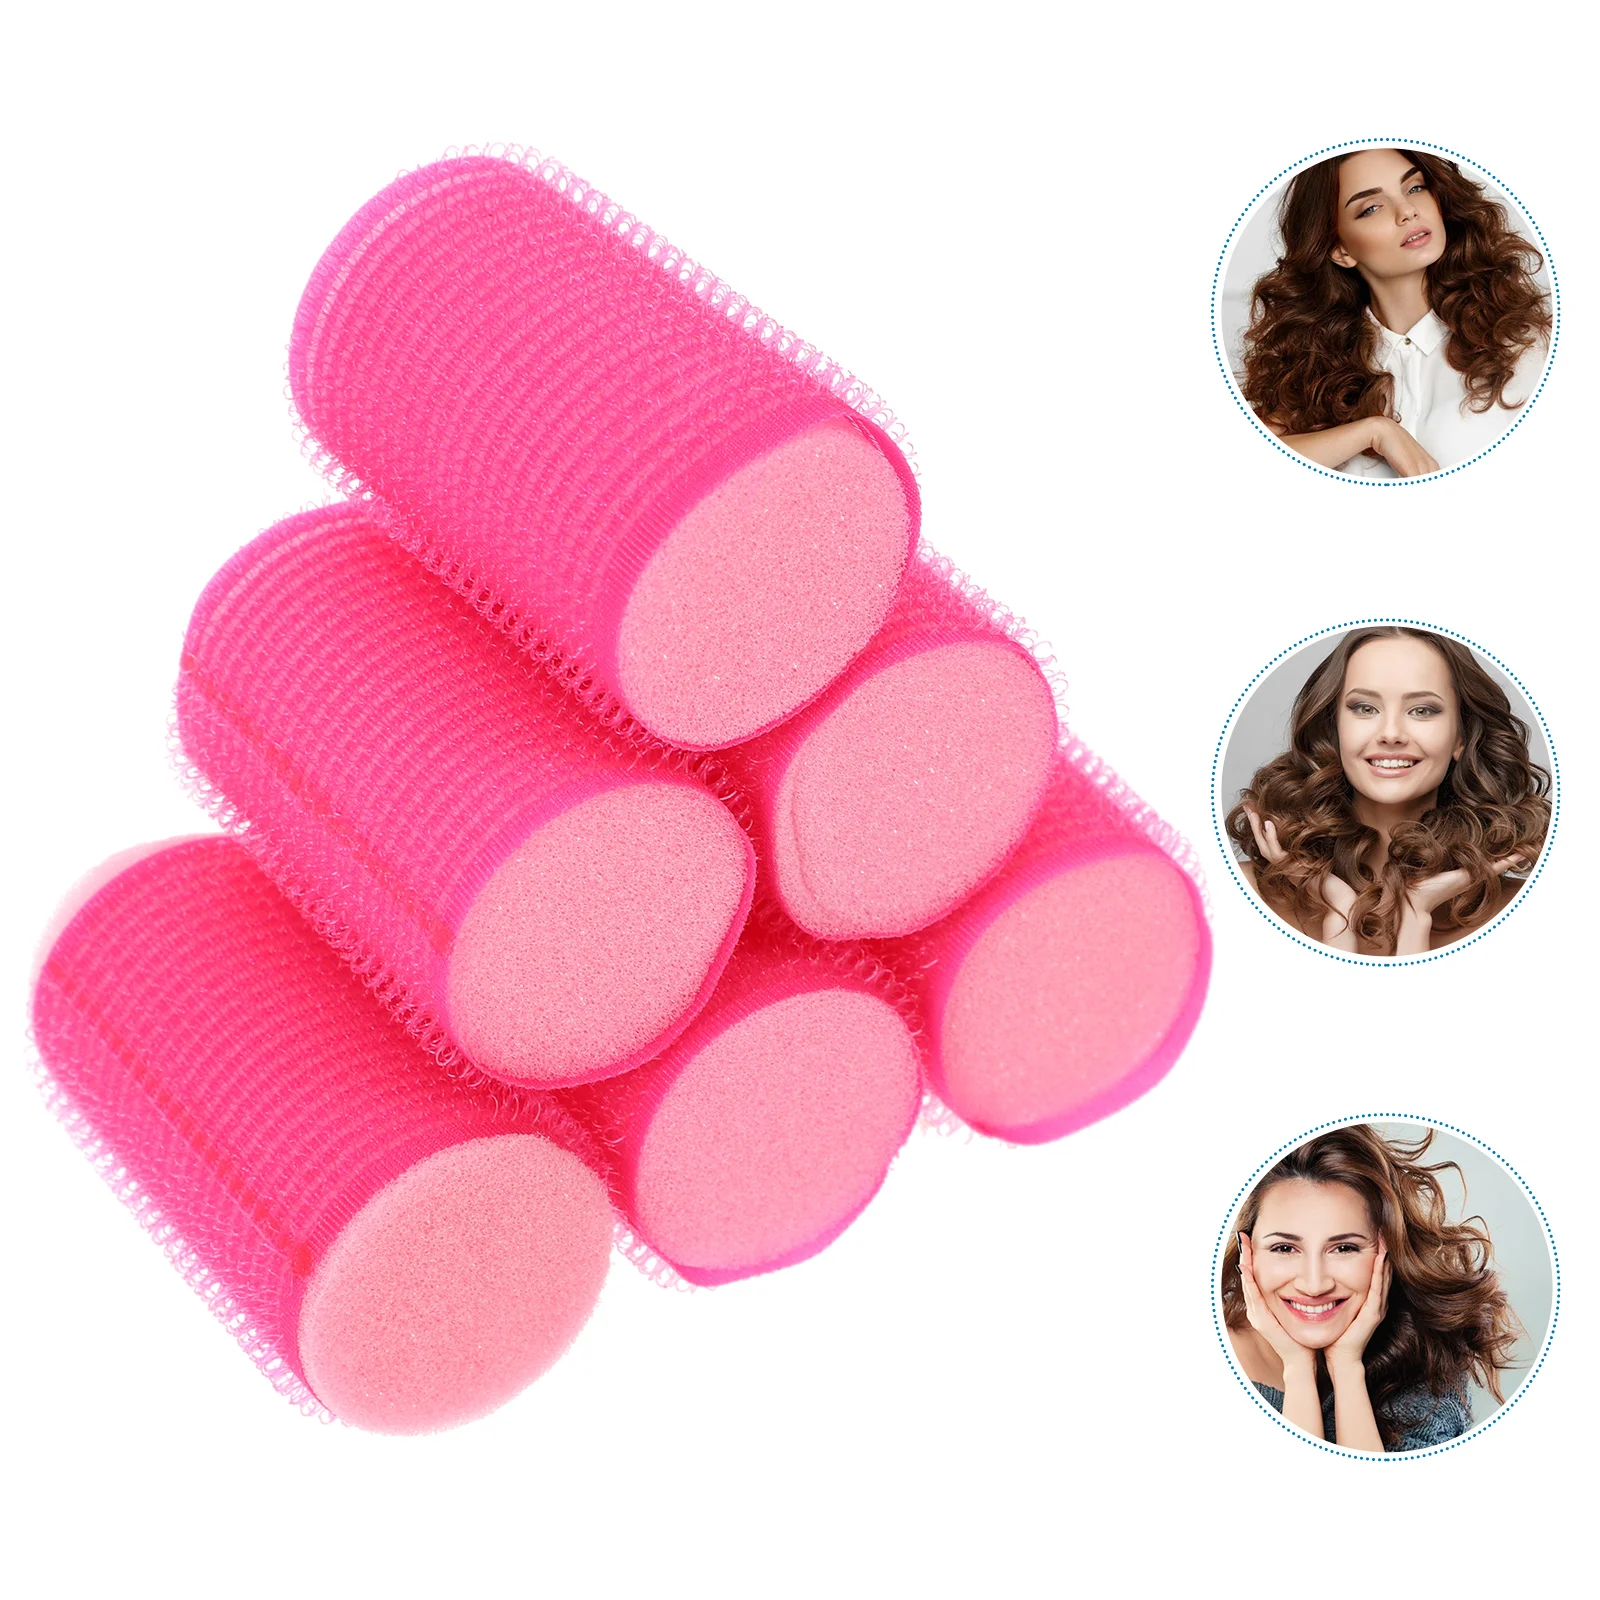 

8pcs Hair Rollers Self Grip Hair Curlers Hairdressing Curlers Self- Adhesive Hair Volume Hair Styling Tools